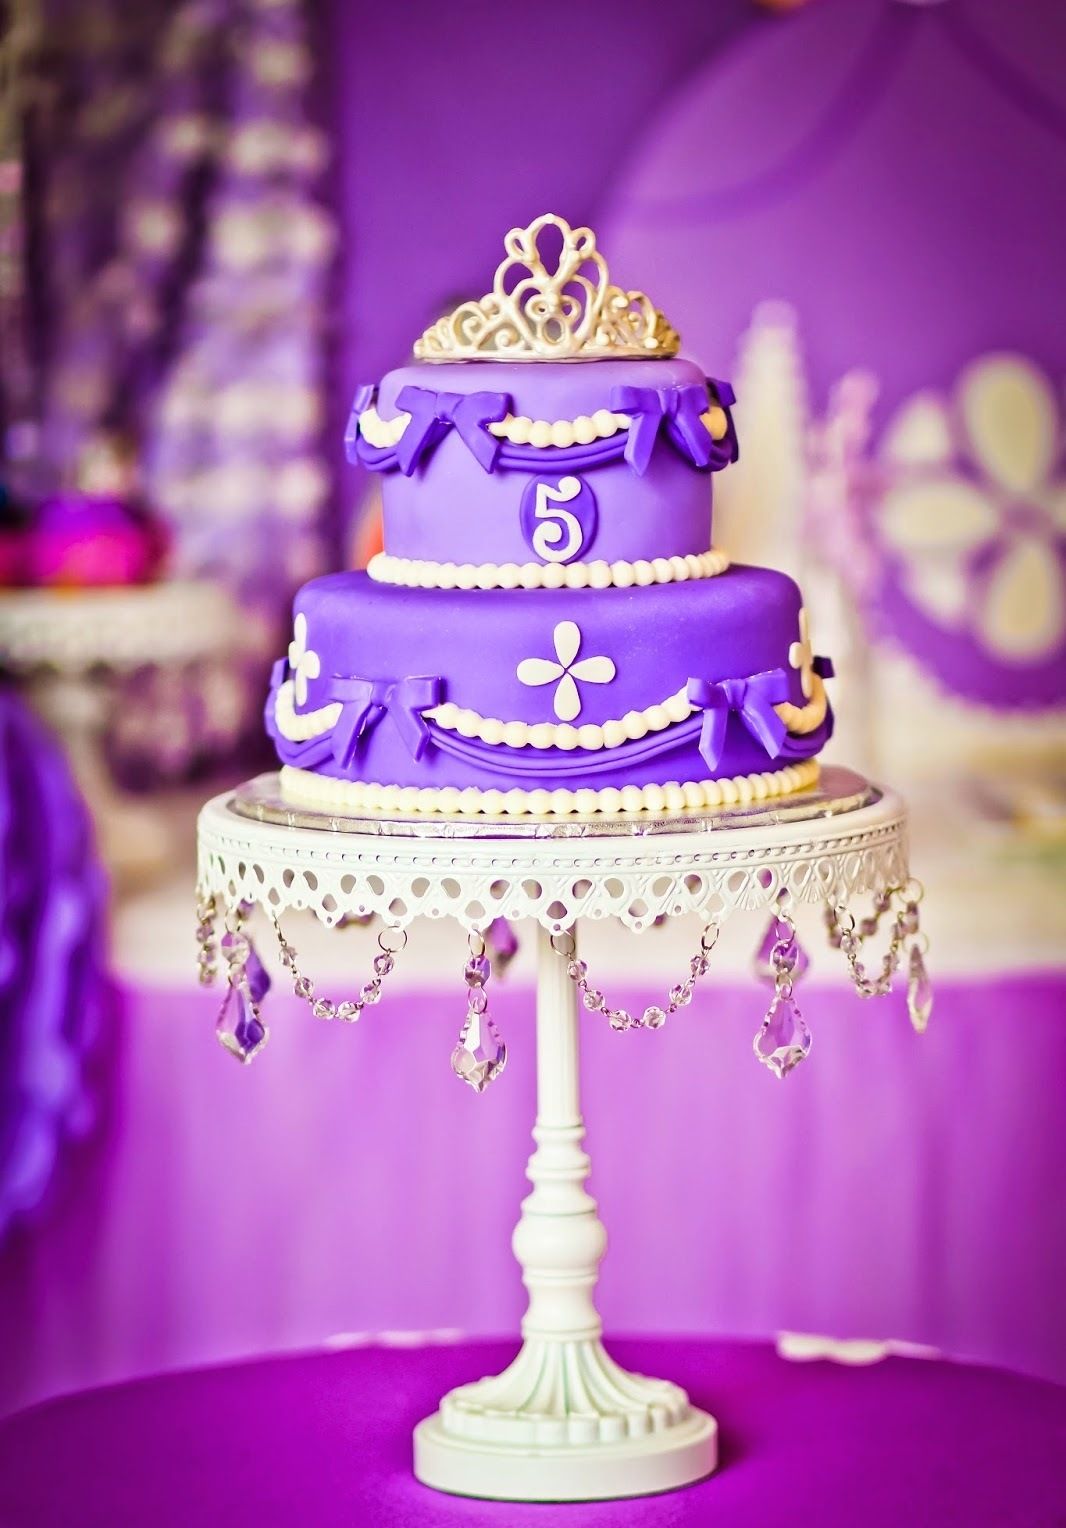 bolo da princesa sofia com chantilly #decoraçãofestainfantil  #decoraçãofesta #aniversárioinfantil #prin…